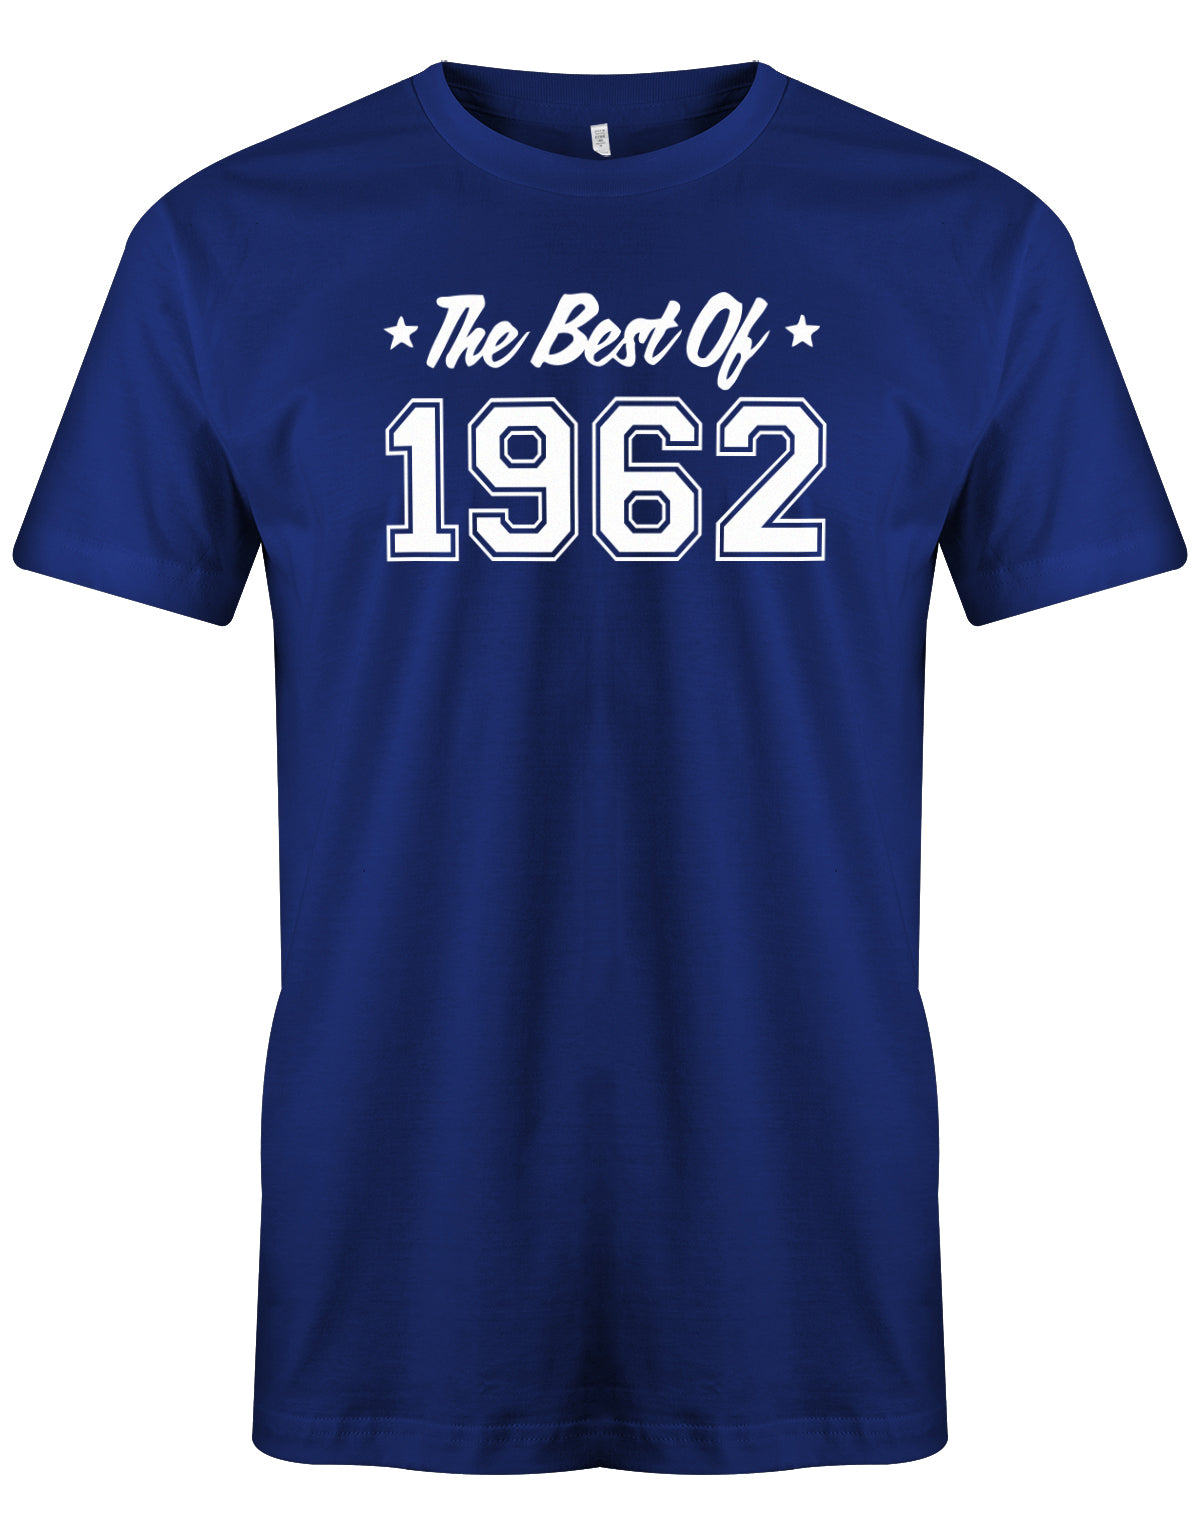 The best of 1962 Geburtstag - Jahrgang 1962 Geschenk Männer Shirt